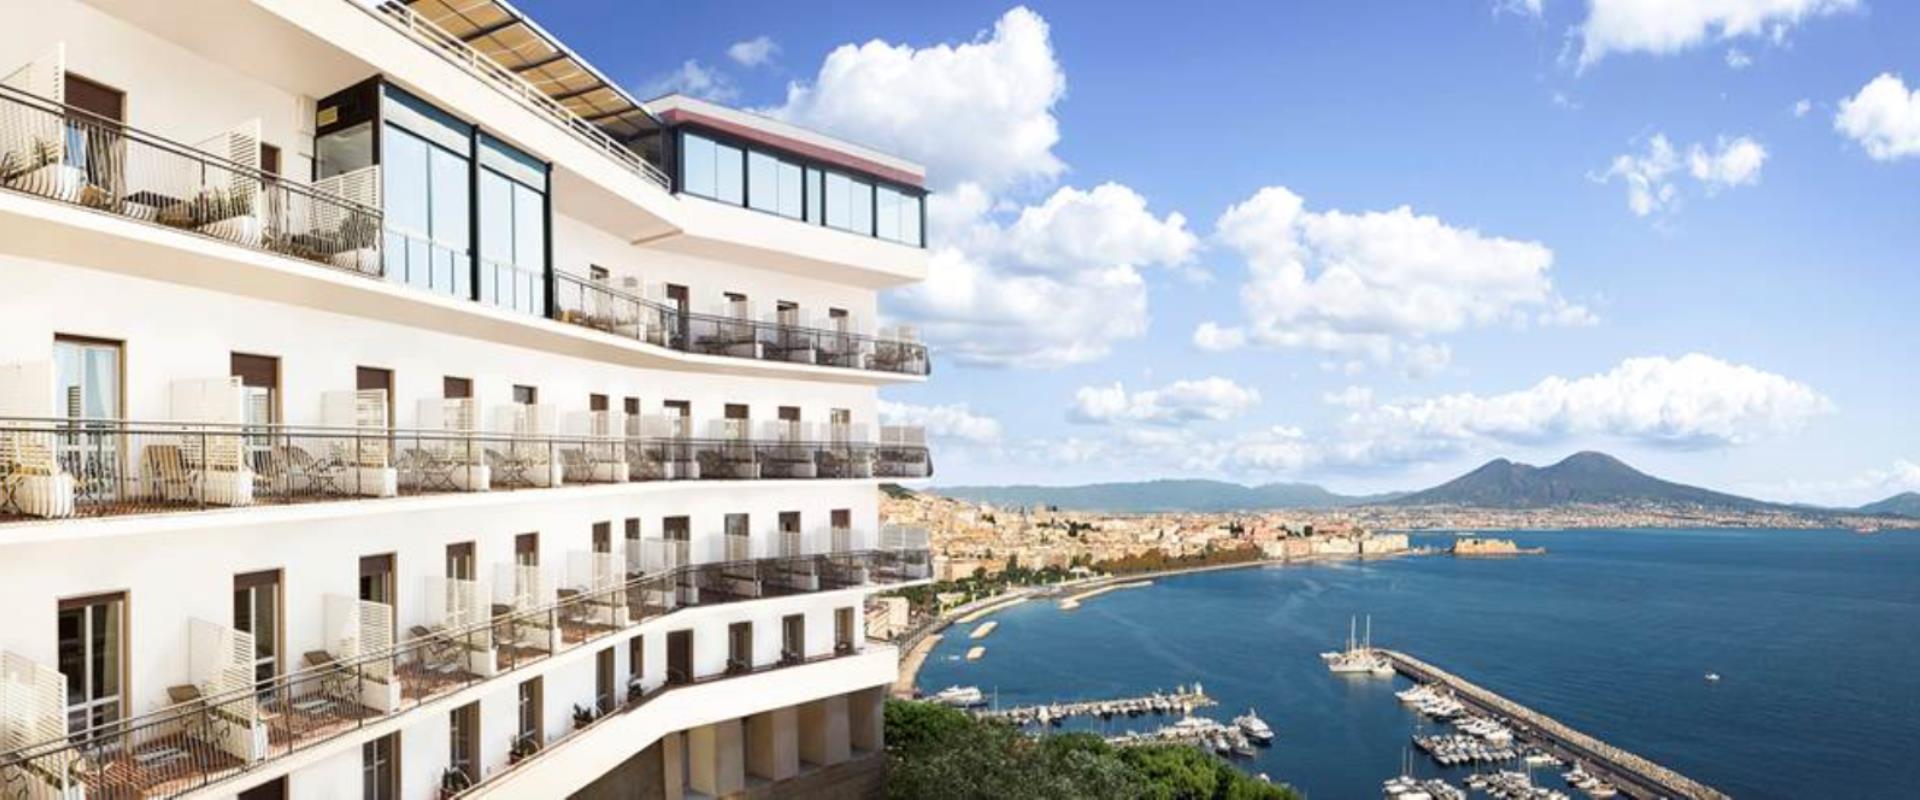 Hotel Paradiso Nápoles. Vista del hotel Bahía de Posillipo Nápoles